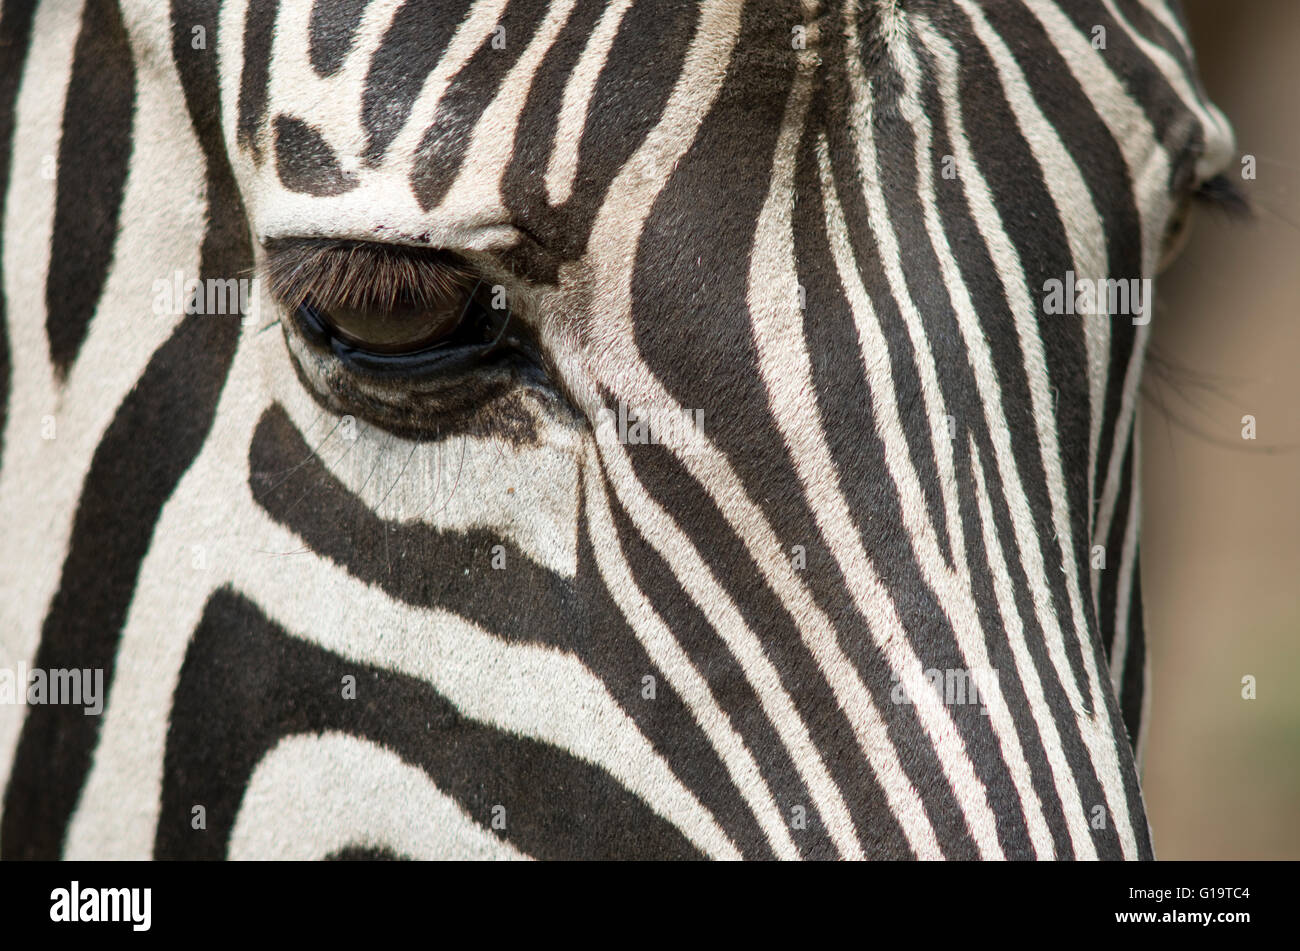 Close-up of a zebra's eye - zebra face, zebra profile. Stock Photo